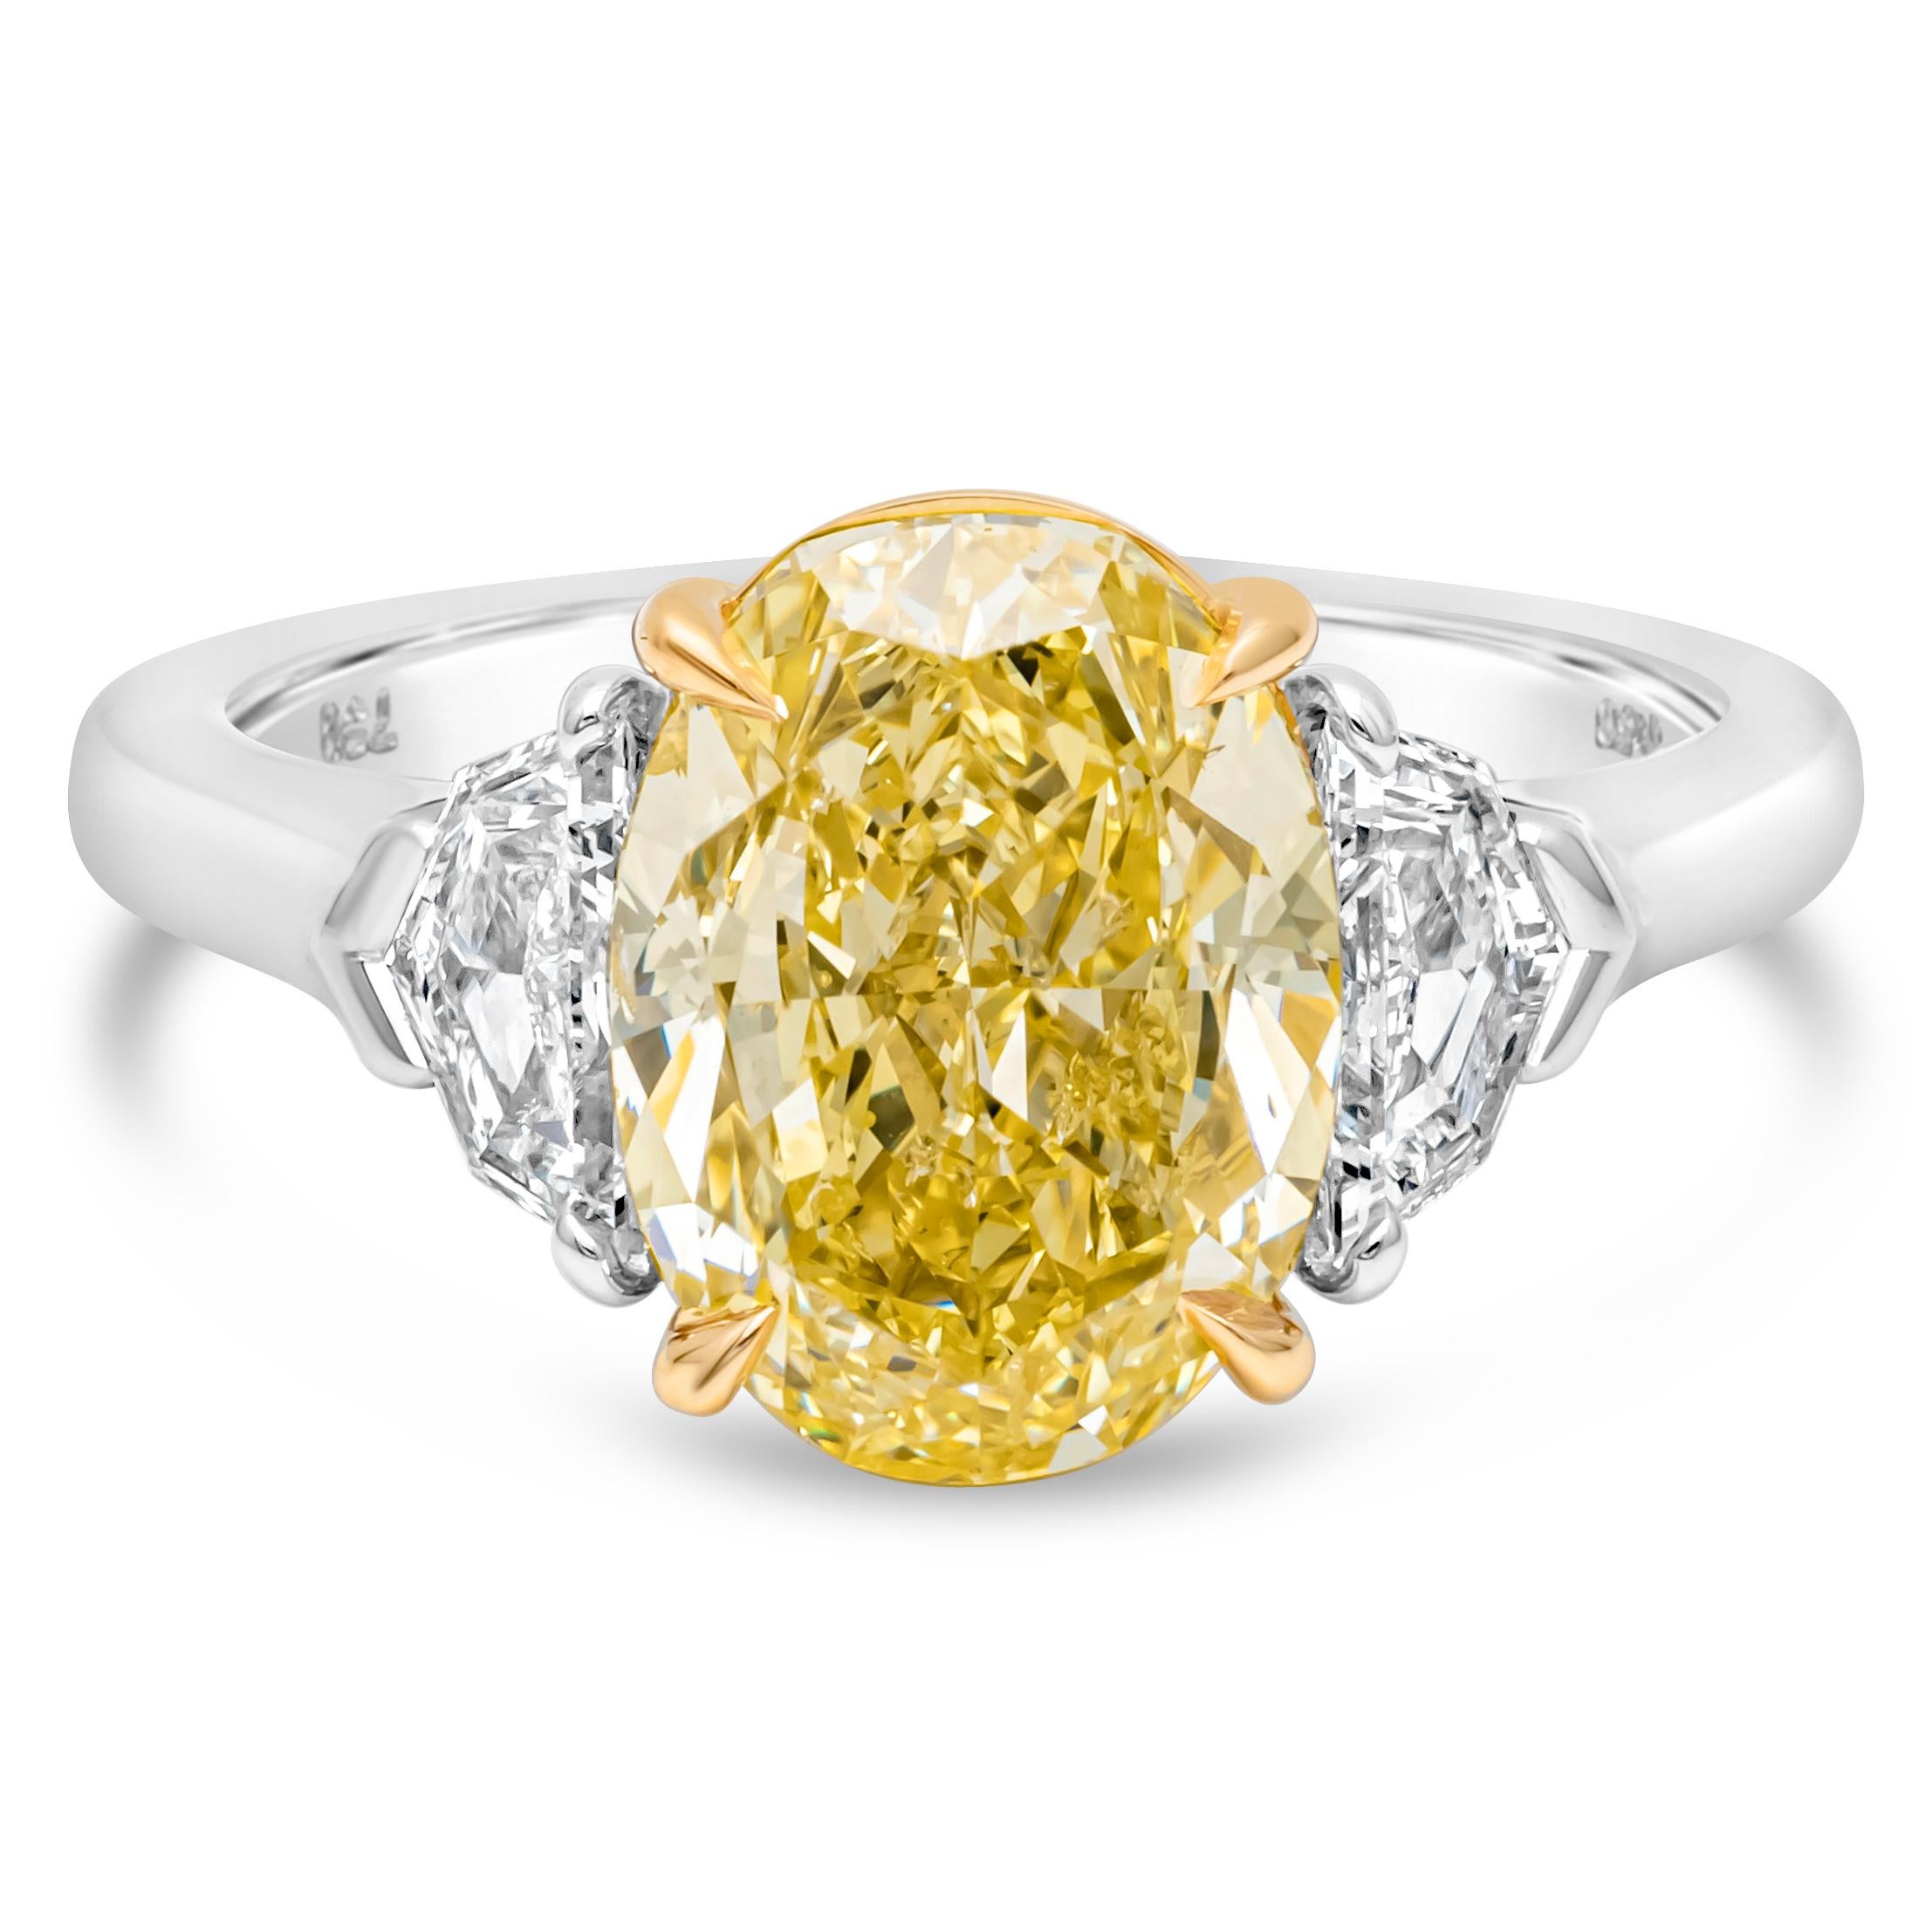 Diese wunderbare und stilvolle drei Stein Verlobungsring präsentiert eine GIA-zertifizierte 4,12 Karat oval geschliffenen farbintensiven gelben Diamanten in der Mitte, in einem vier Zacken Korb Einstellung. Flankiert von Diamanten auf jeder Seite